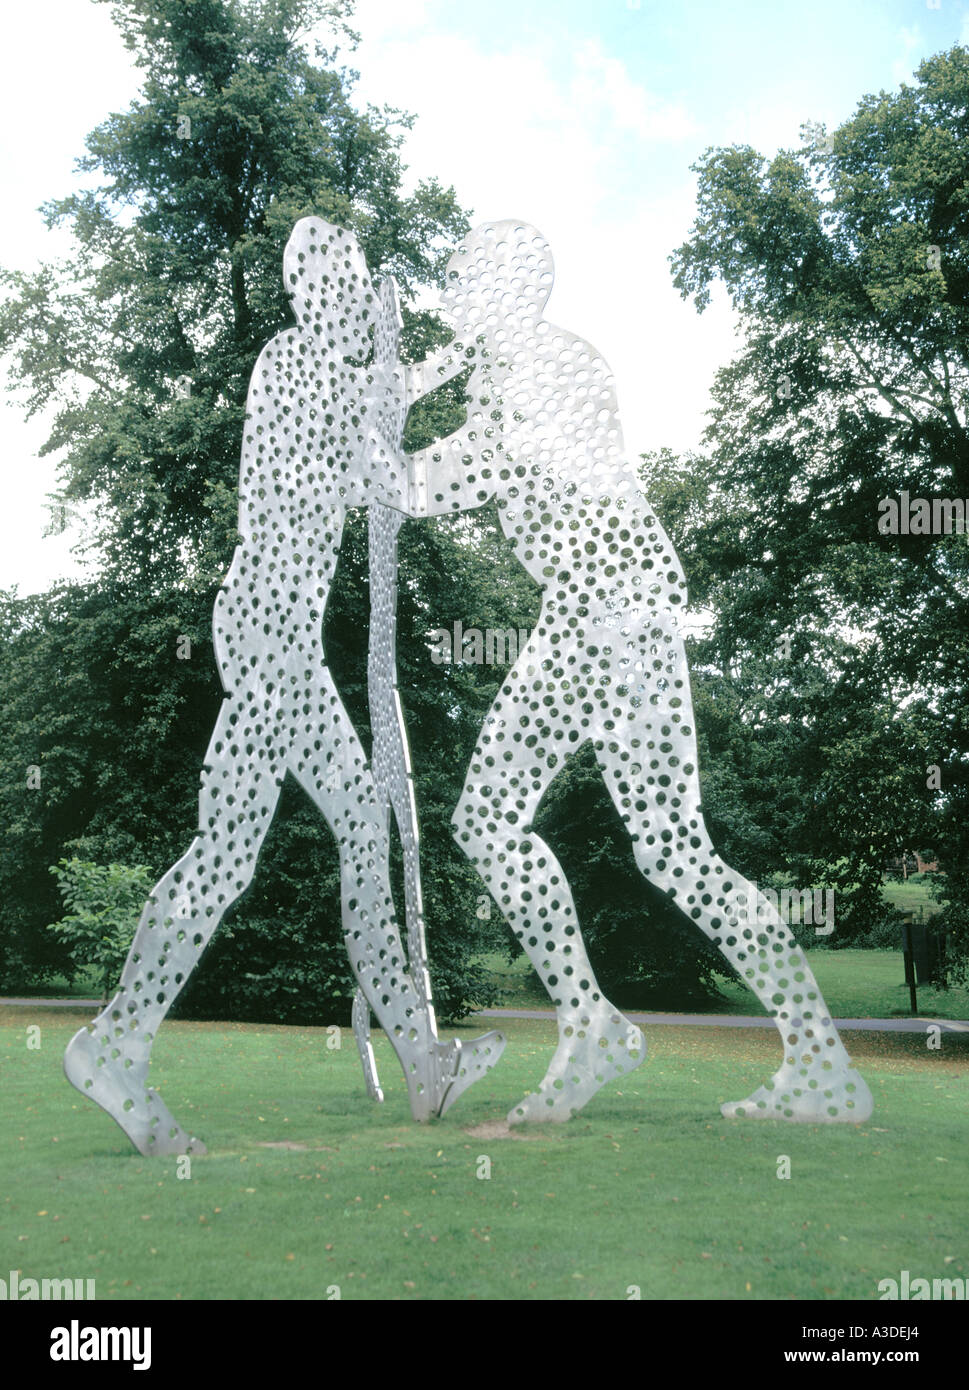 Molecule Man sculptures en aluminium Jonathan Borofsky sur exposition extérieure Yorkshire Sculpture Park & Art Gallery West Bretton, West Yorkshire, Angleterre Royaume-Uni Banque D'Images